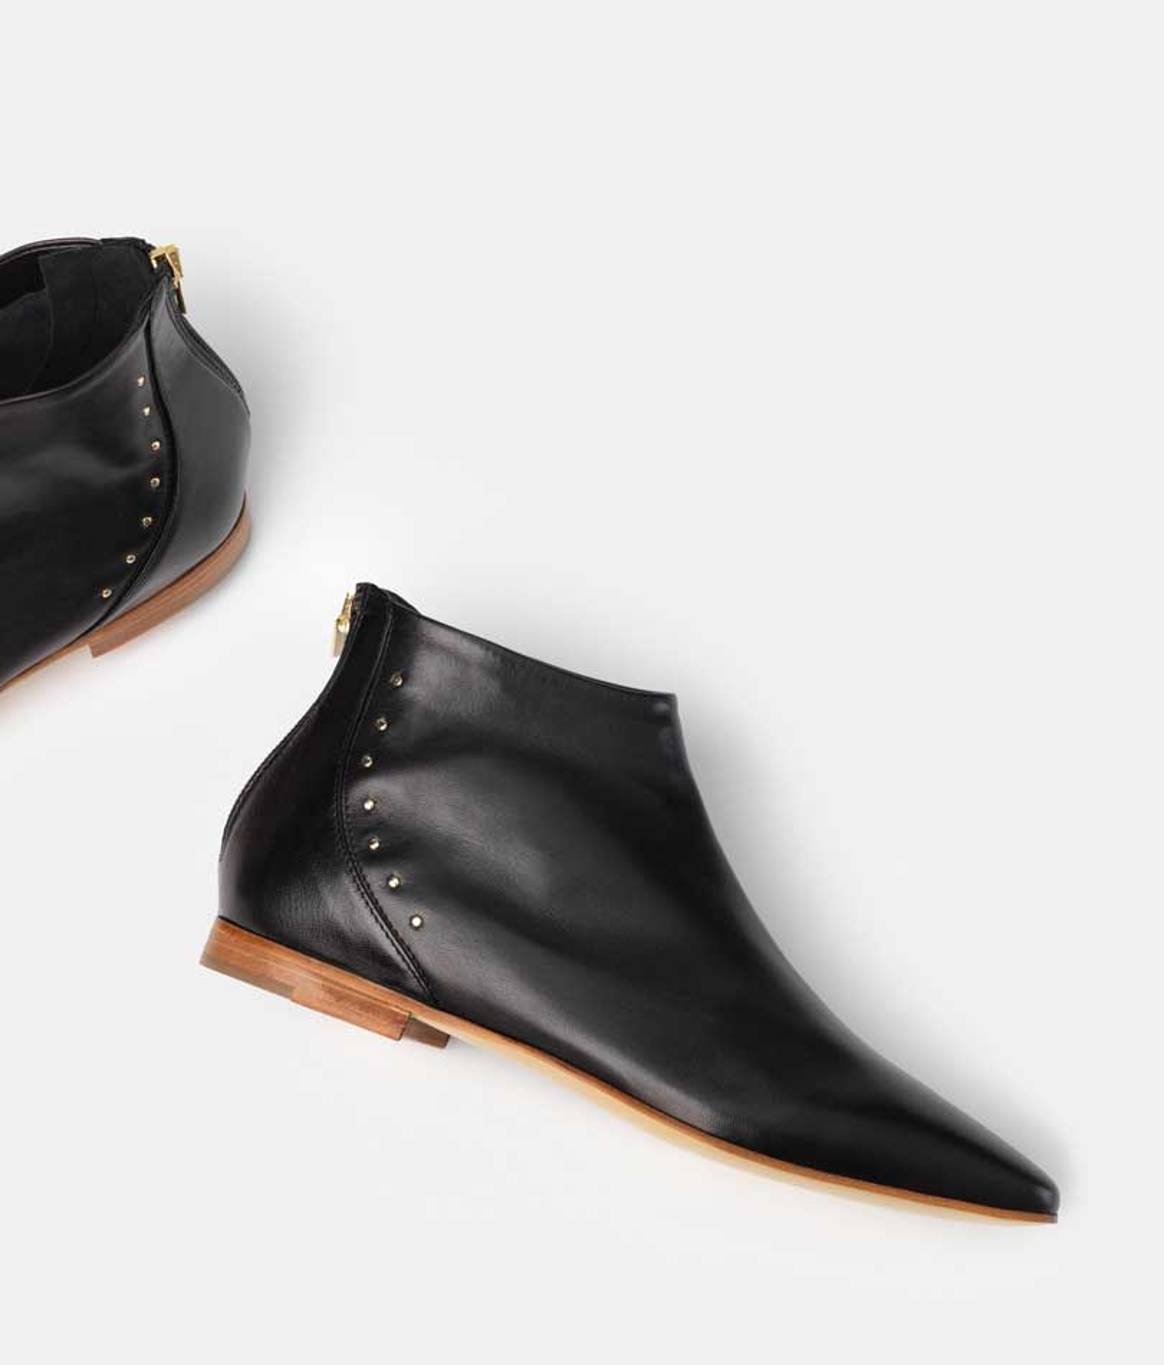 Bells & Becks surge como una nueva marca de calzado italiana